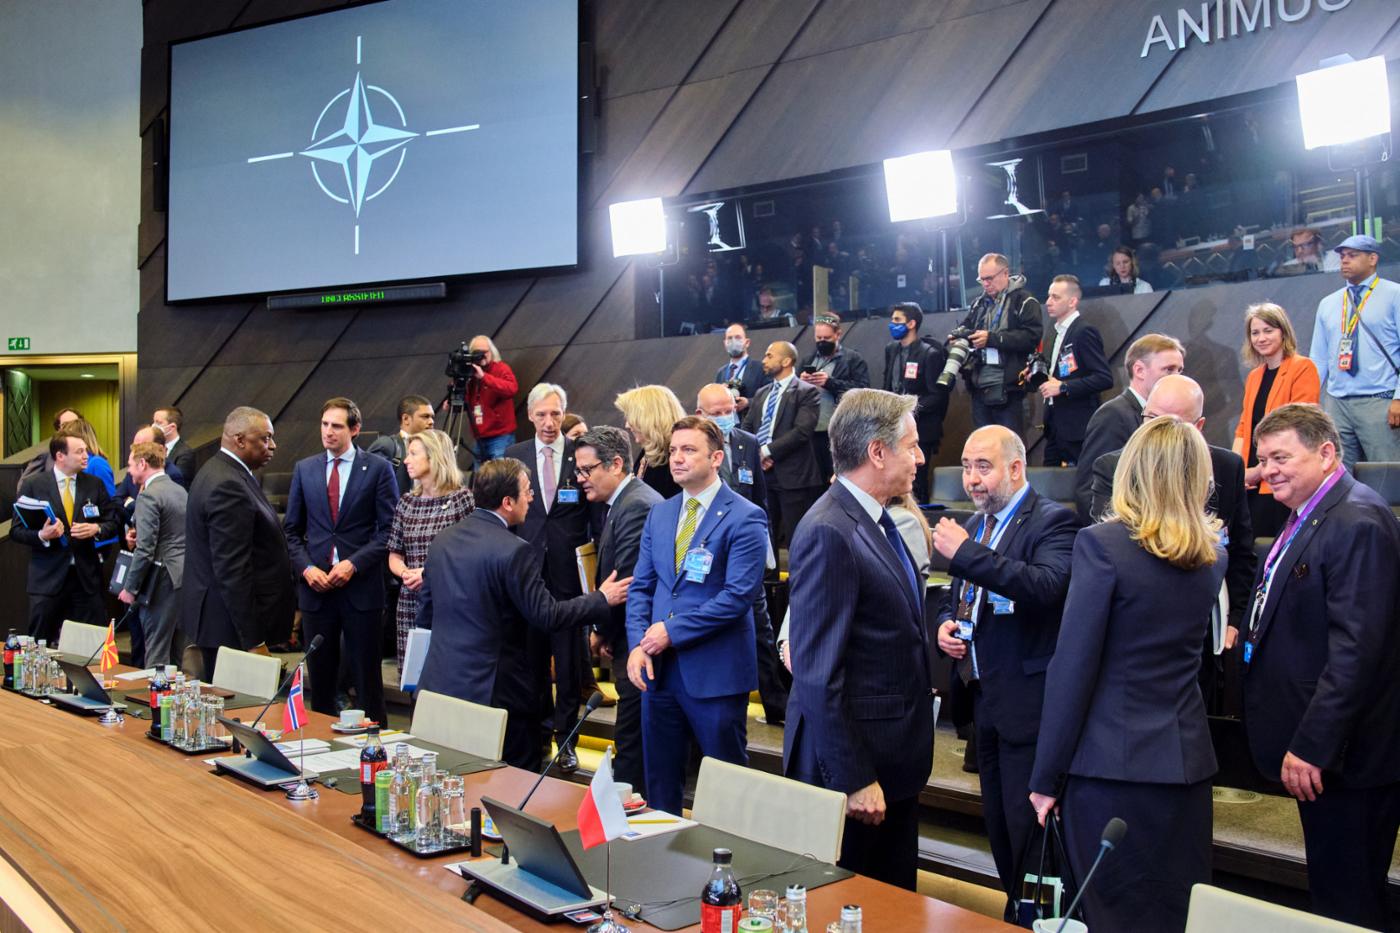  Характерные черты НАТО – ведение переговоров, сложные процессы многосторонних консультаций и, с формальной точки зрения, зависимость от консенсуса. На снимке: главы государств и правительств стран НАТО во время внеочередной встречи на высшем уровне, состоявшейся 24 марта 2022 года в штаб-квартире НАТО. © NATO
